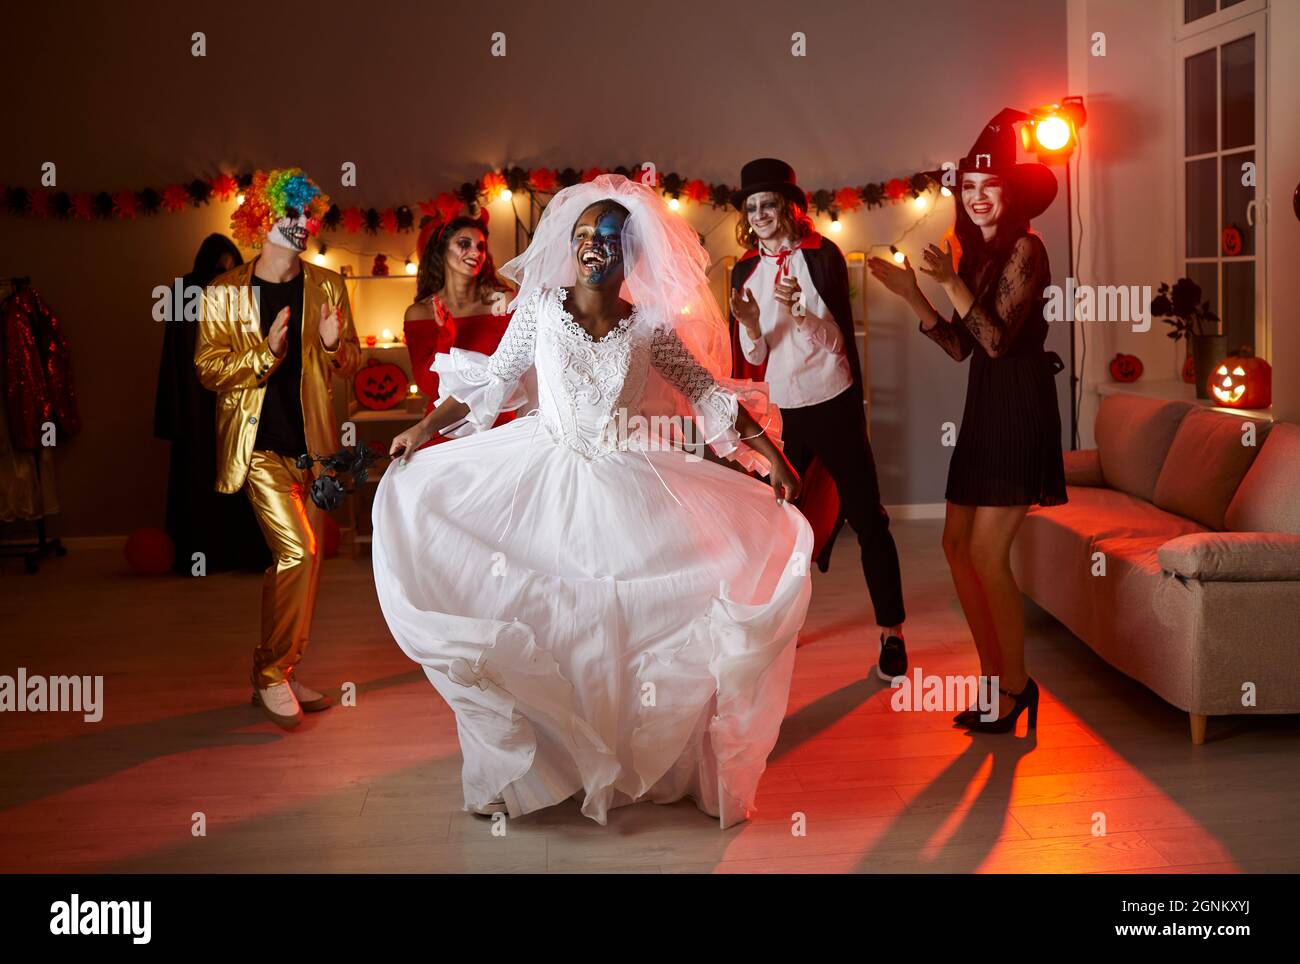 Allegra giovane donna afroamericana in costume di sposa morto che balla divertendosi al partito di Halloween. Foto Stock